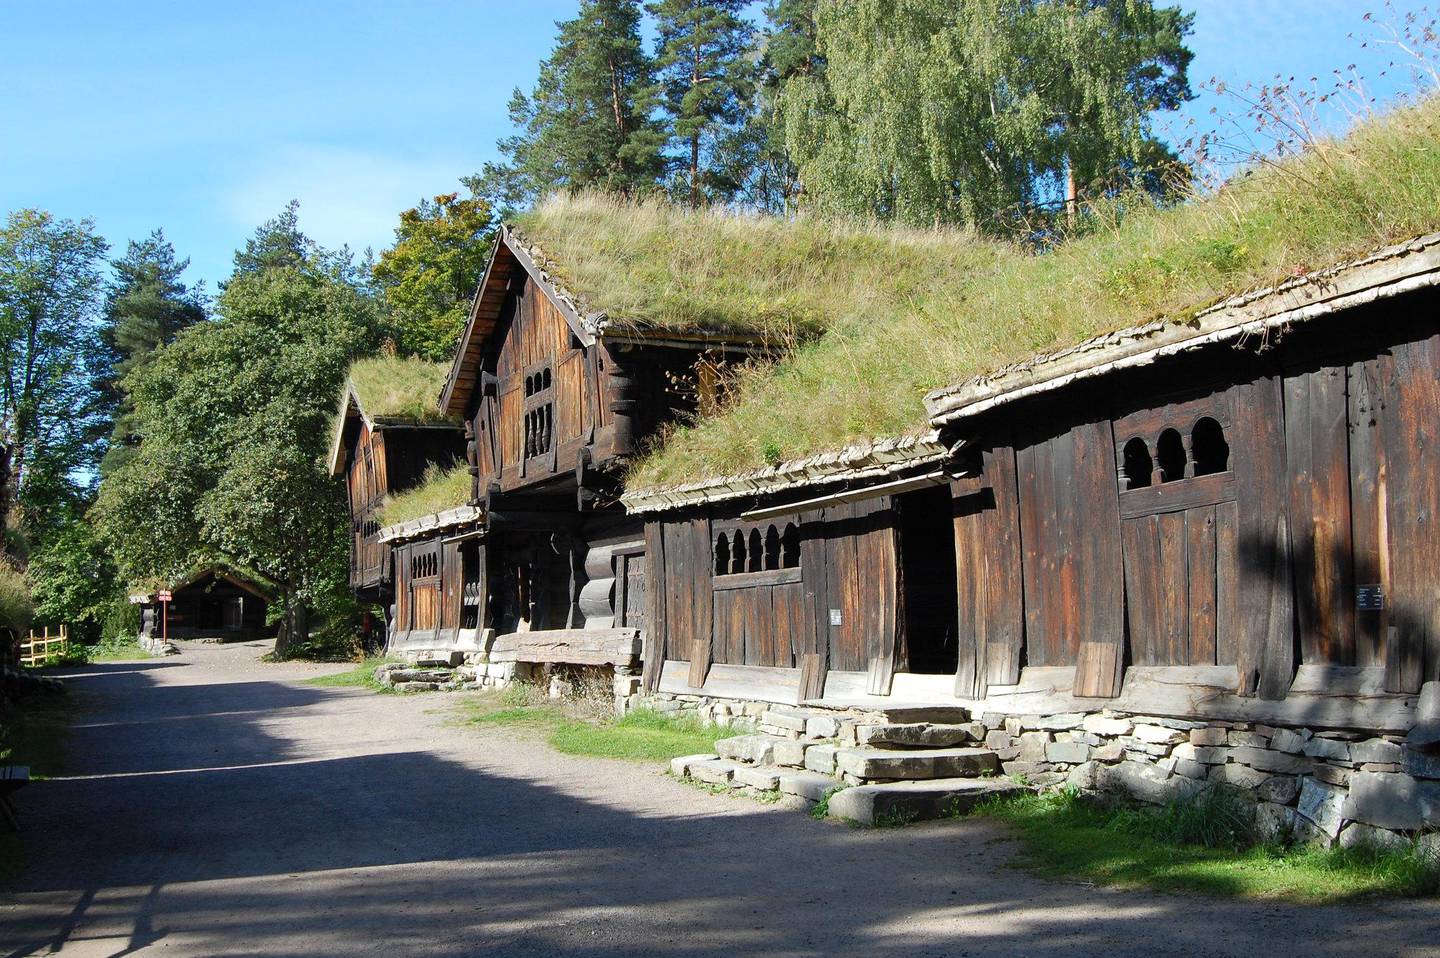 Norsk Folkemuseum ligger på Bygdøy og består av både innendørs og utendørs utstillinger av hvordan folk levde i Norge fra 1500-tallet og frem til i dag.